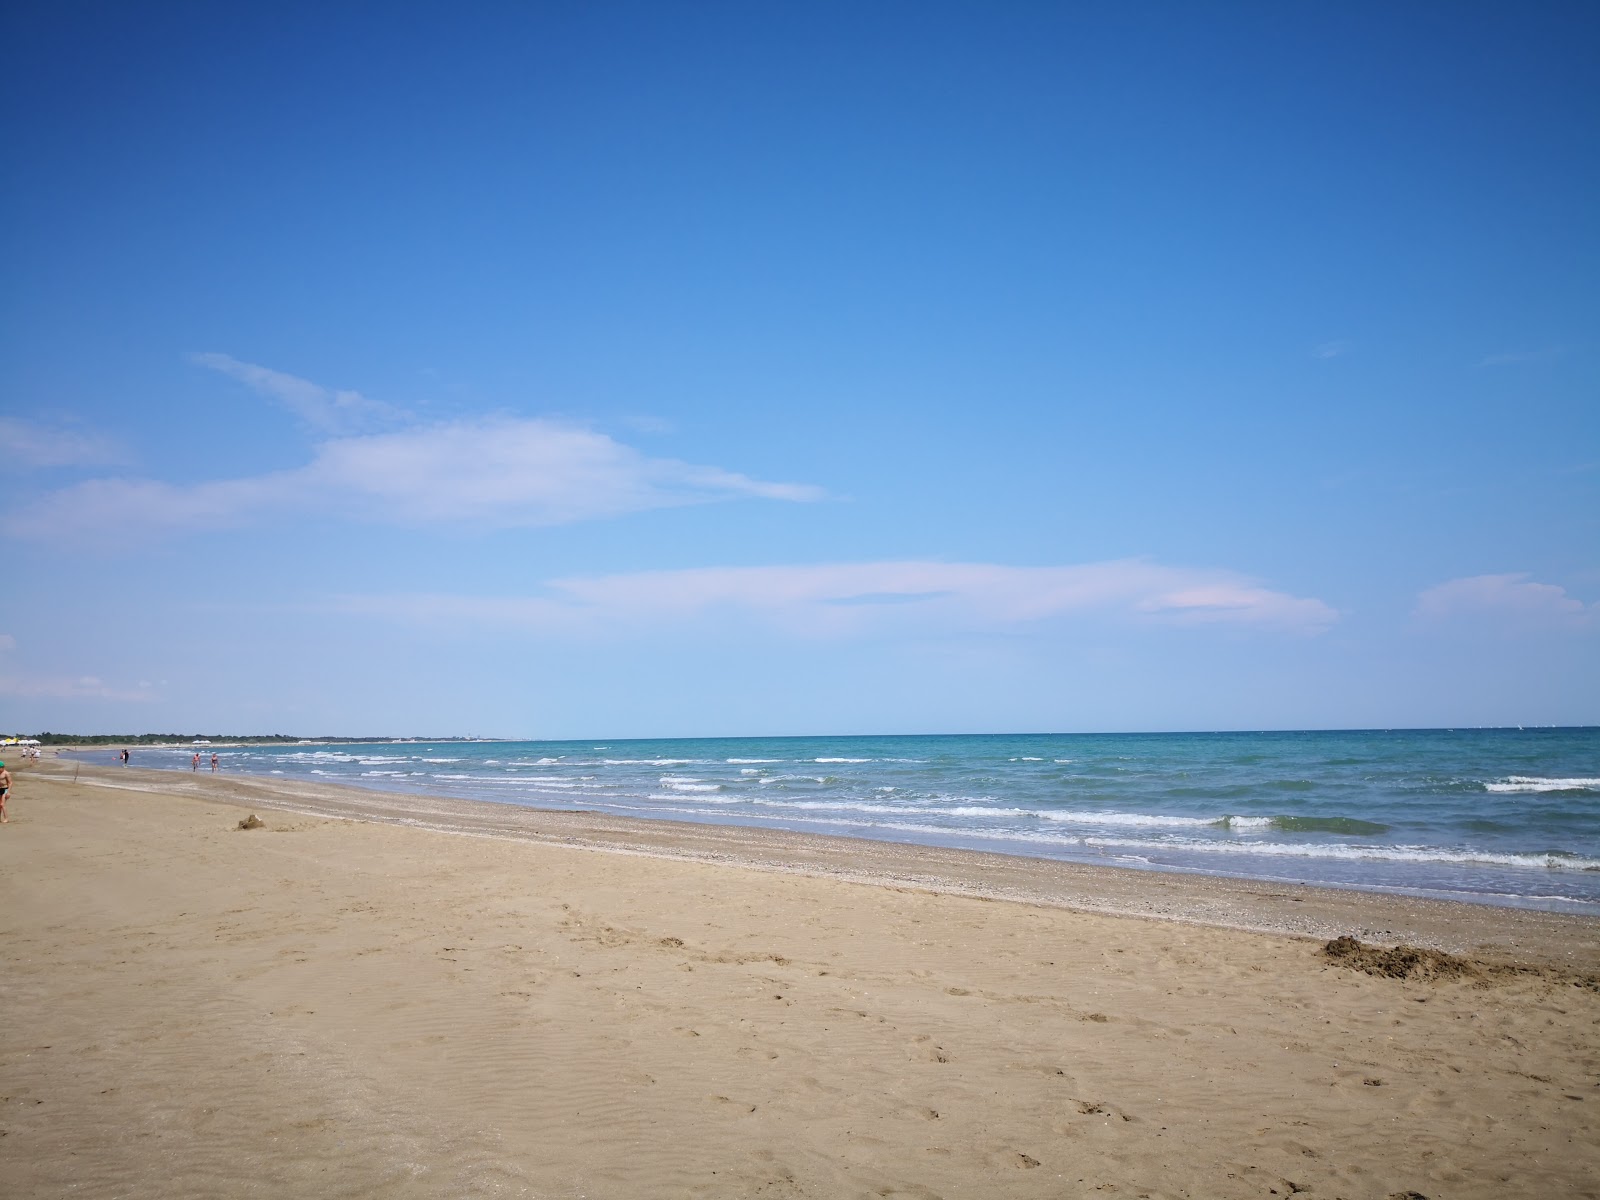 Zdjęcie beach Punta Sabbioni z powierzchnią jasny, drobny piasek